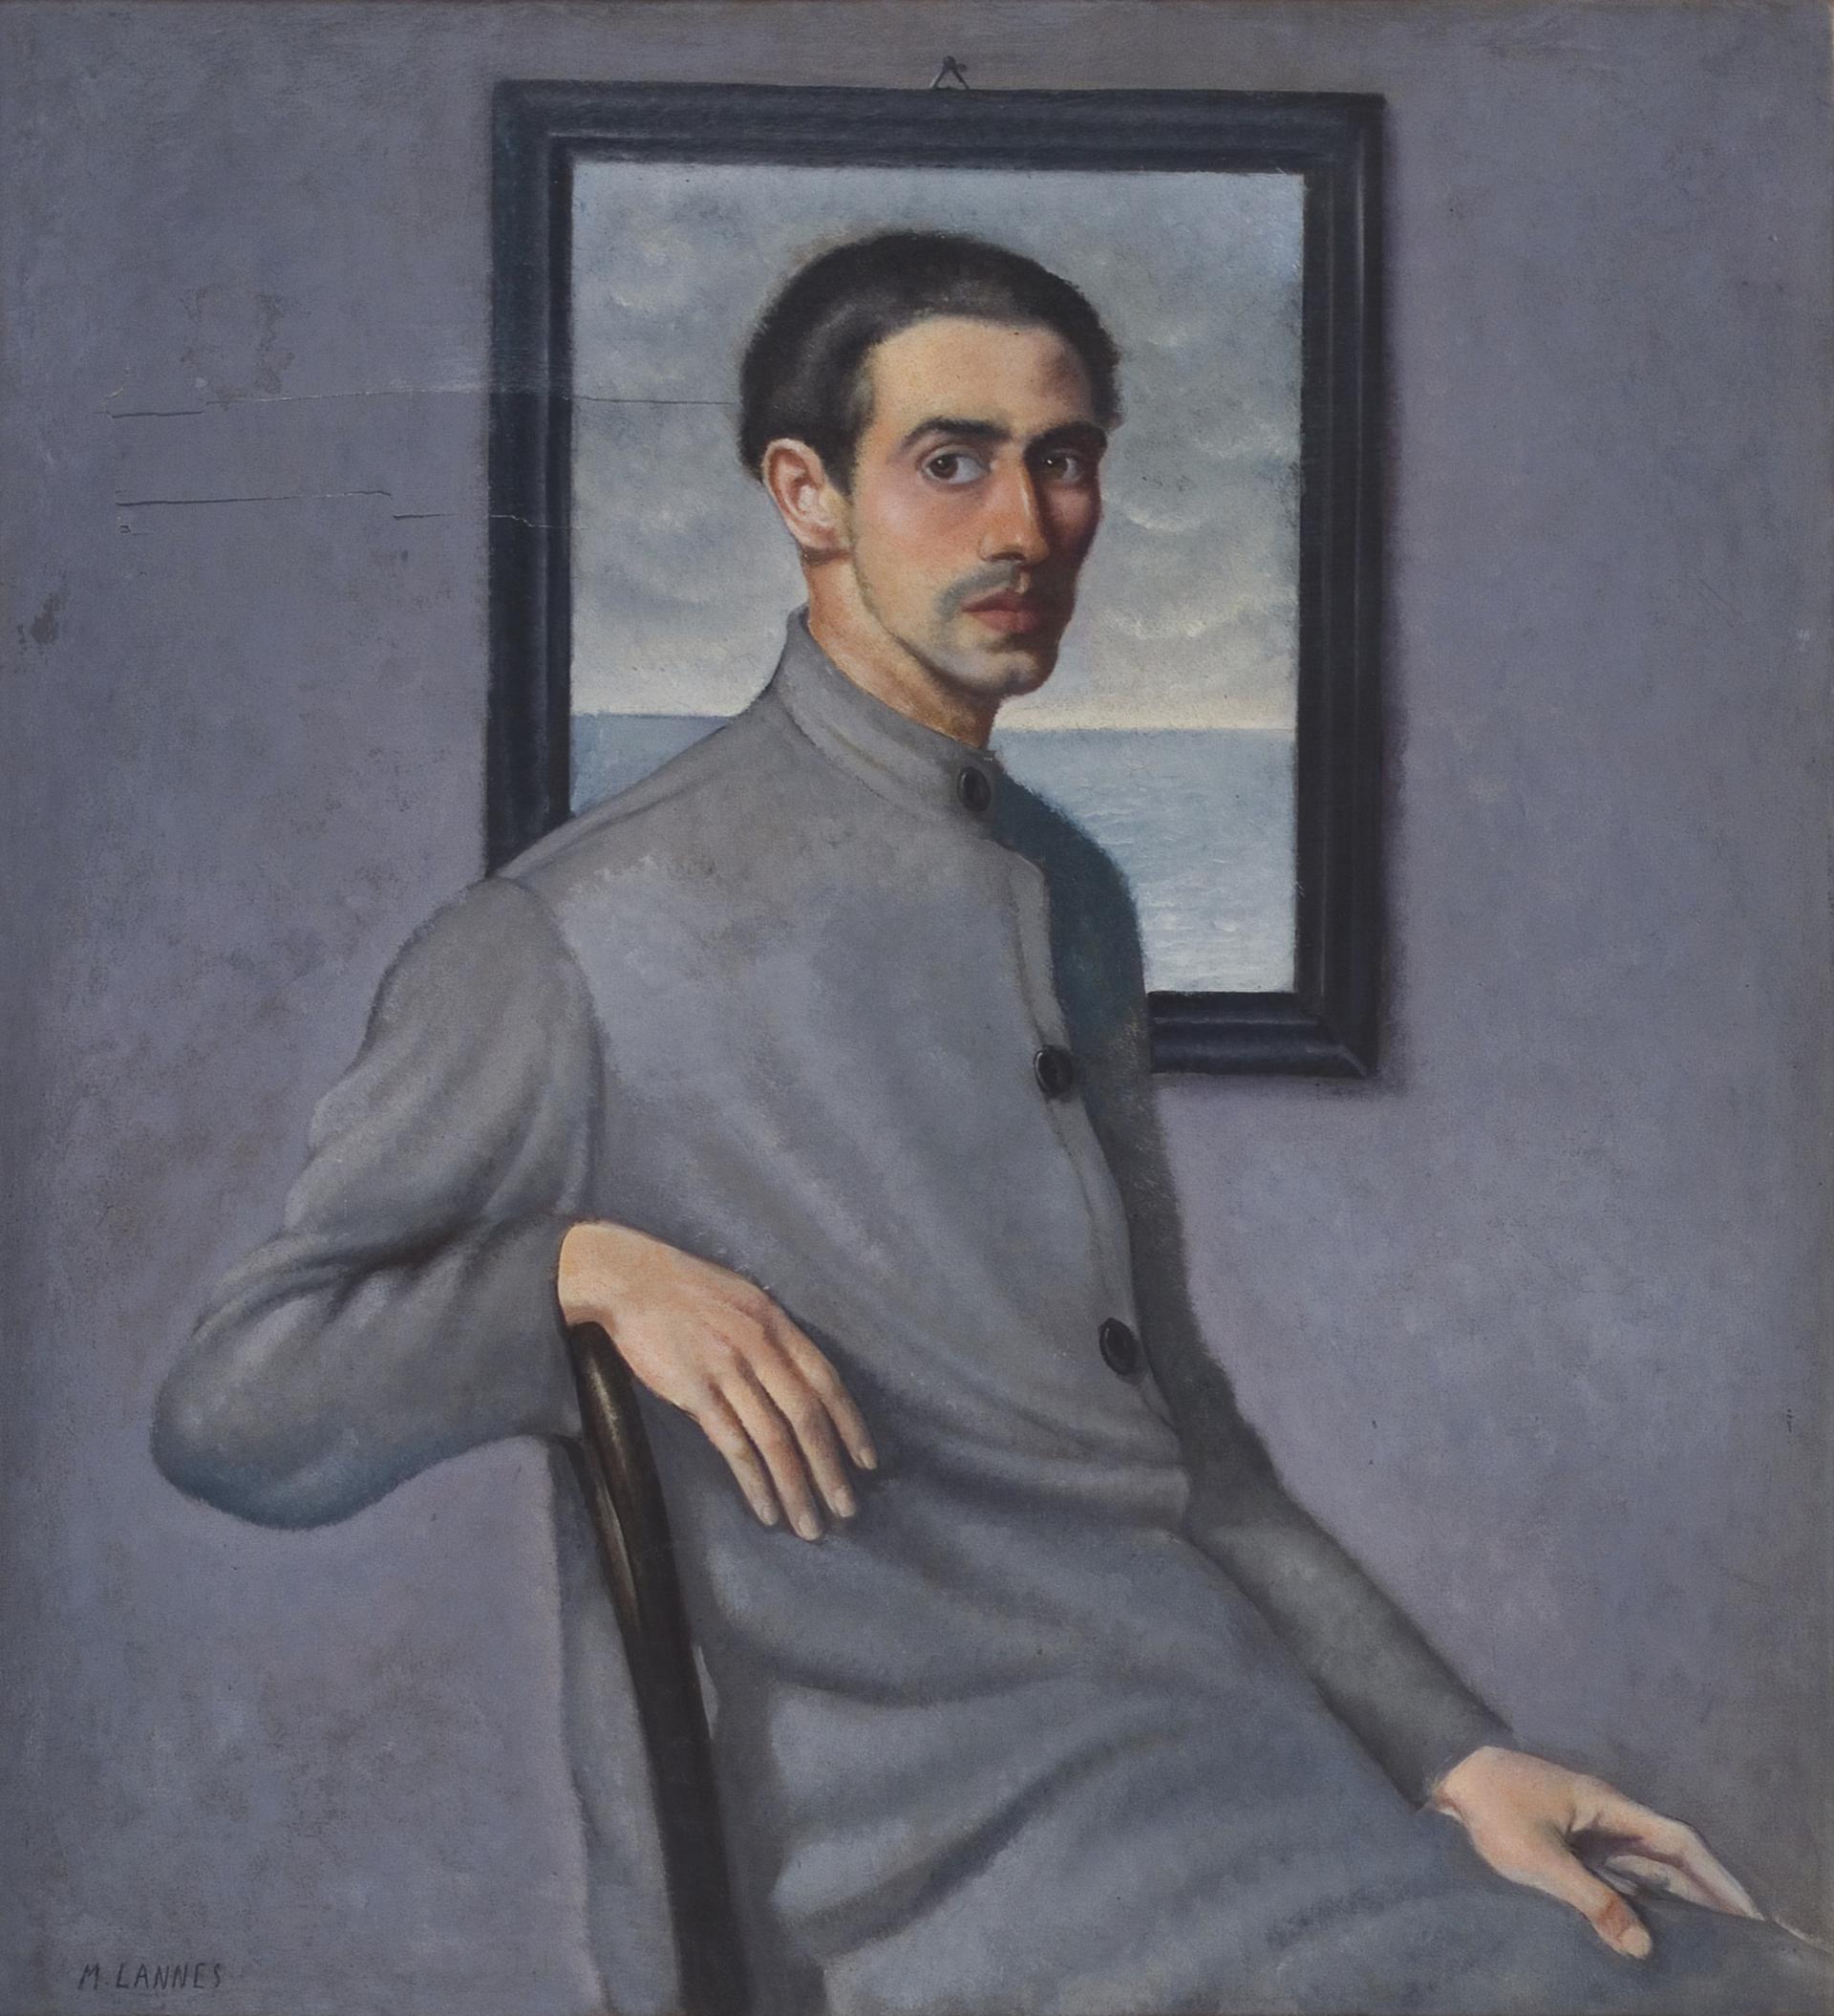 Mario Lannes, Autoritratto, 1930-1935, olio su tela, Musei Provinciali di Gorizia